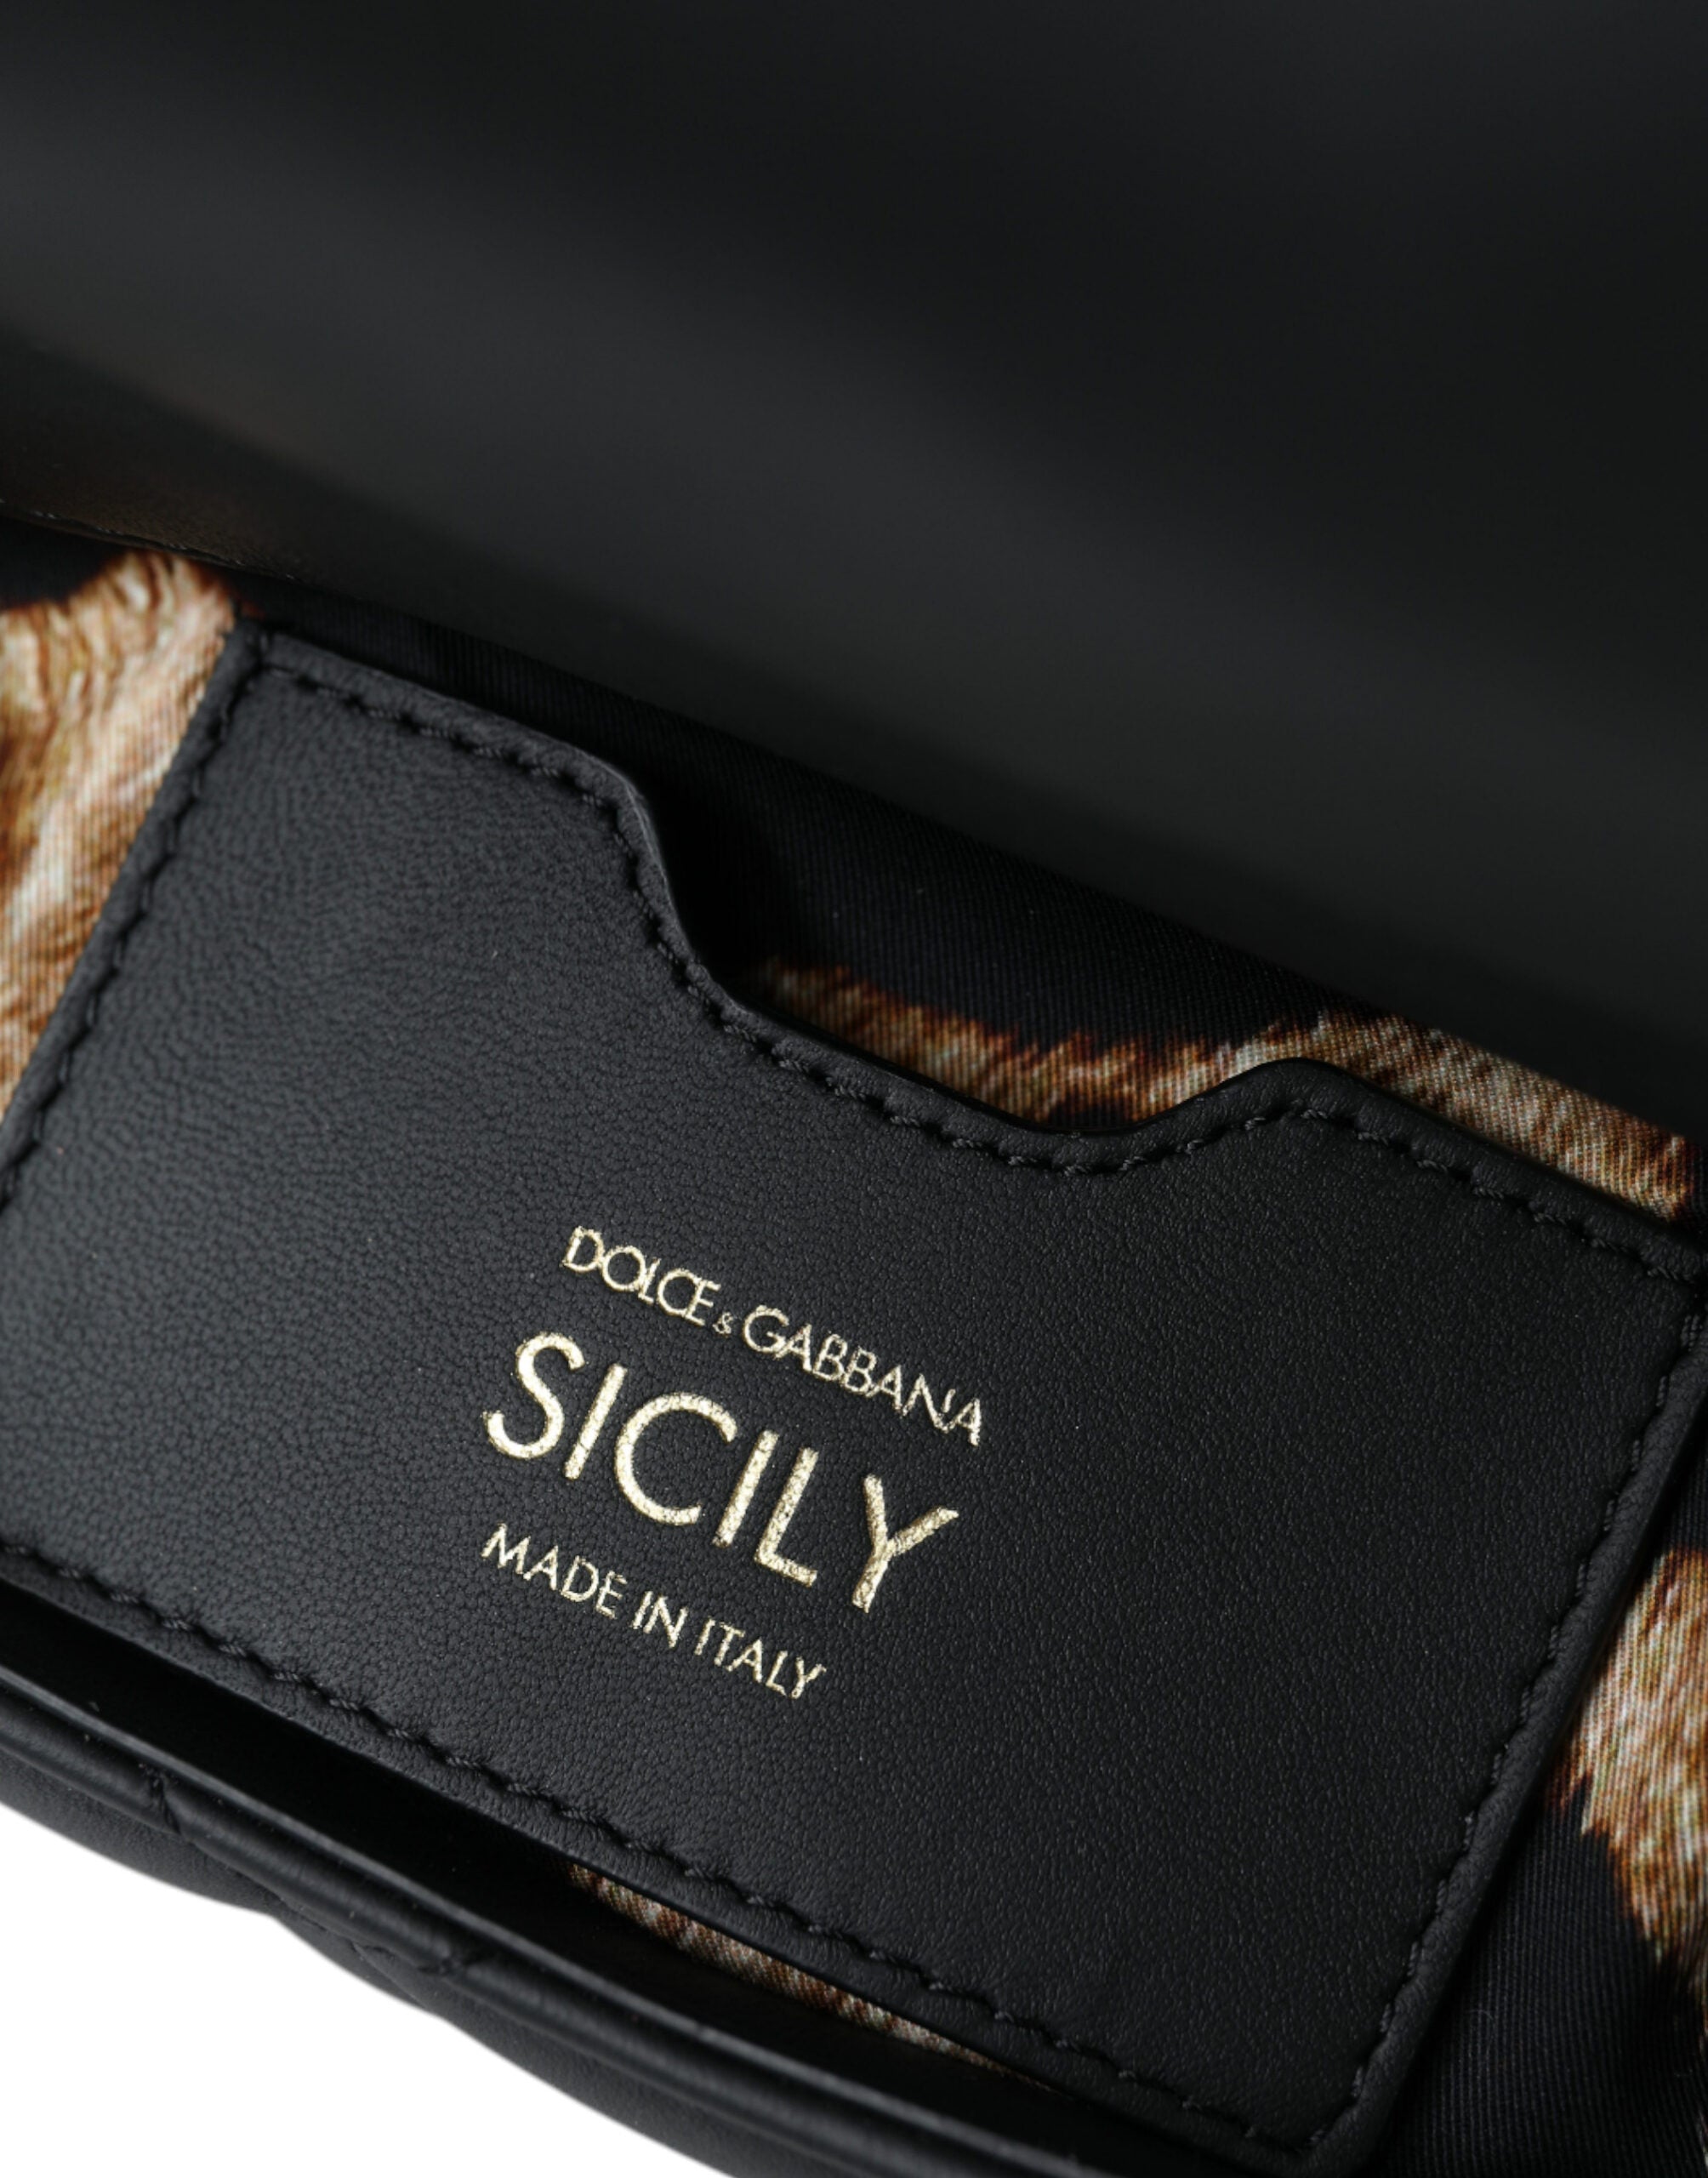 Dolce & Gabbana Elegant Black Leather Sicily Shoulder Bag